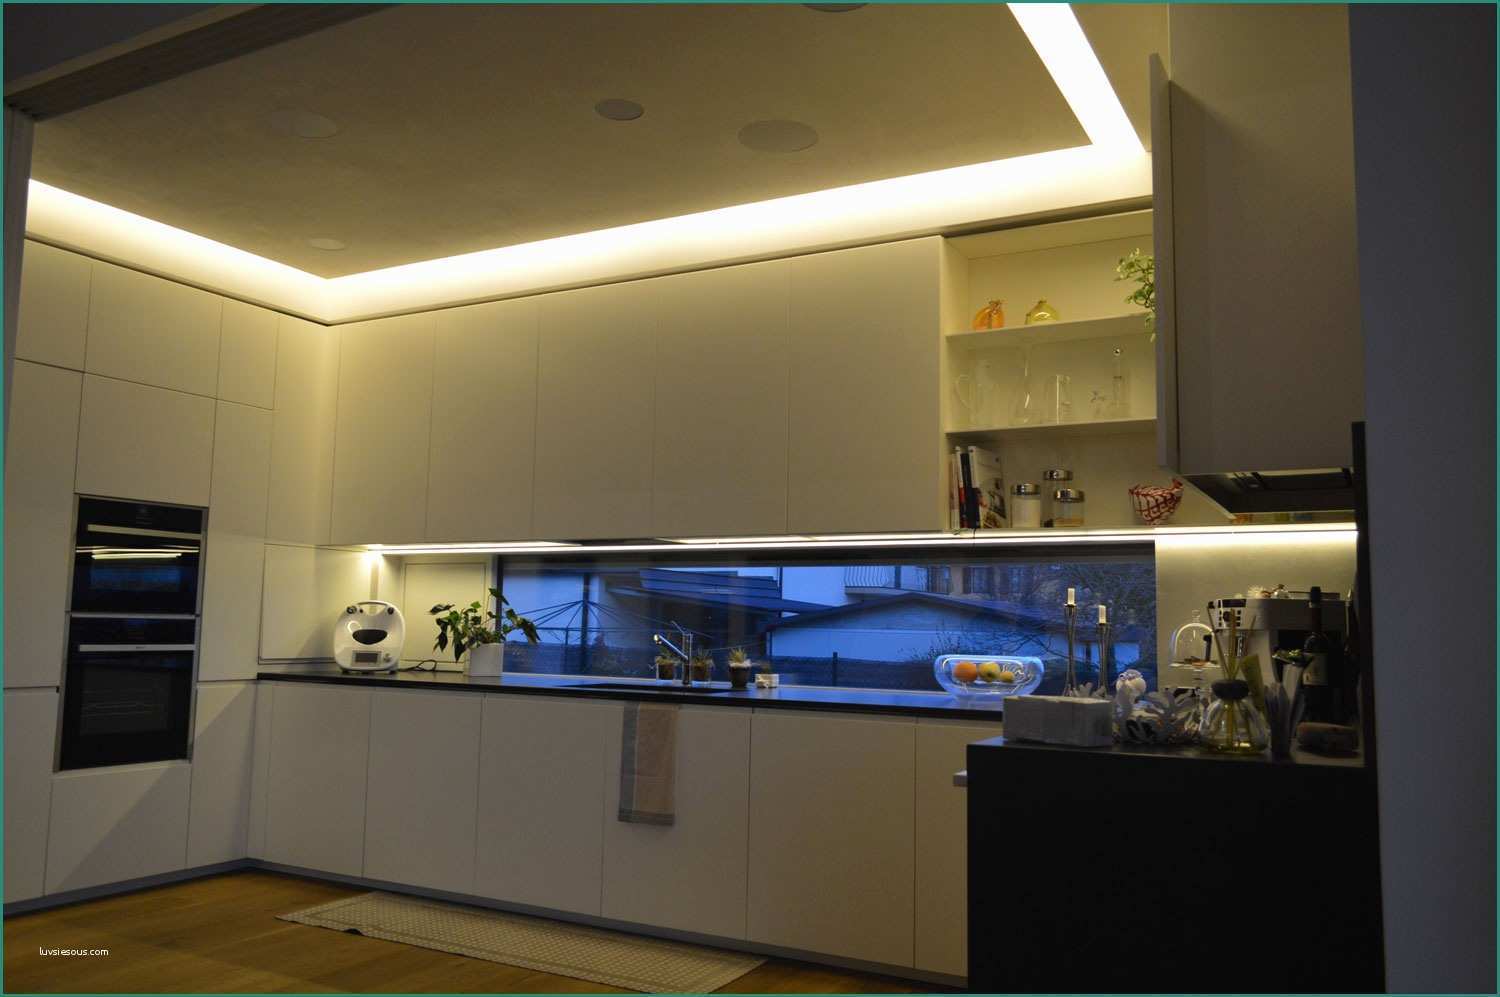 Illuminazione sottopensile Cucina E Illuminazione Cucina Proposte Ad Hoc Per Ogni Zona